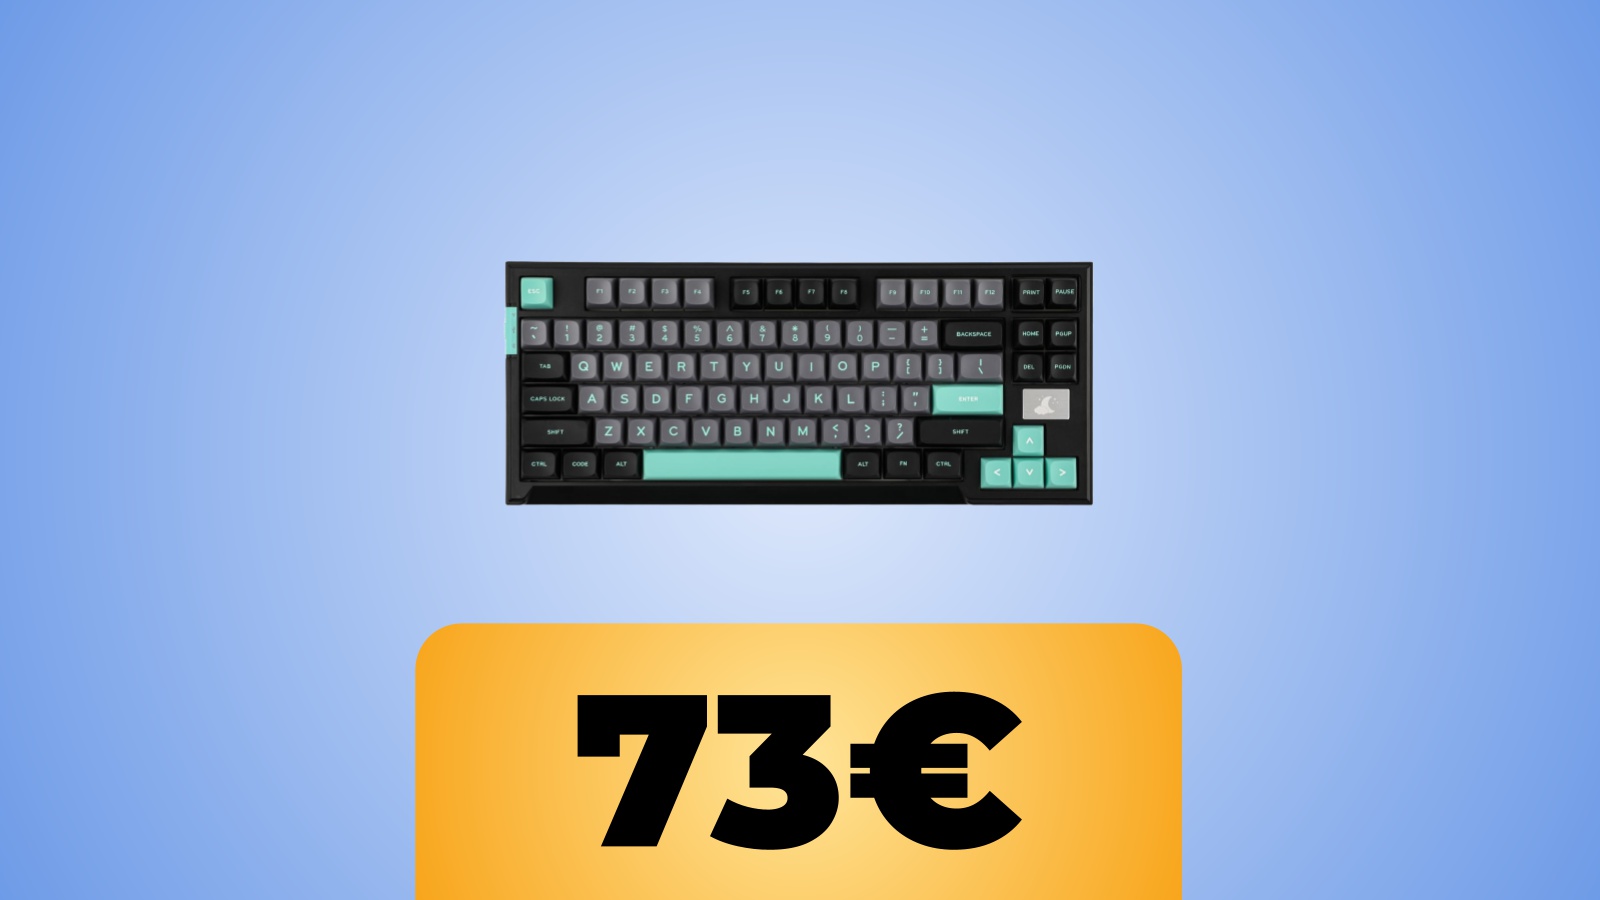 La tastiera EPOMAKER x Feker IK85 Plus è ora in sconto col coupon Amazon al prezzo minimo